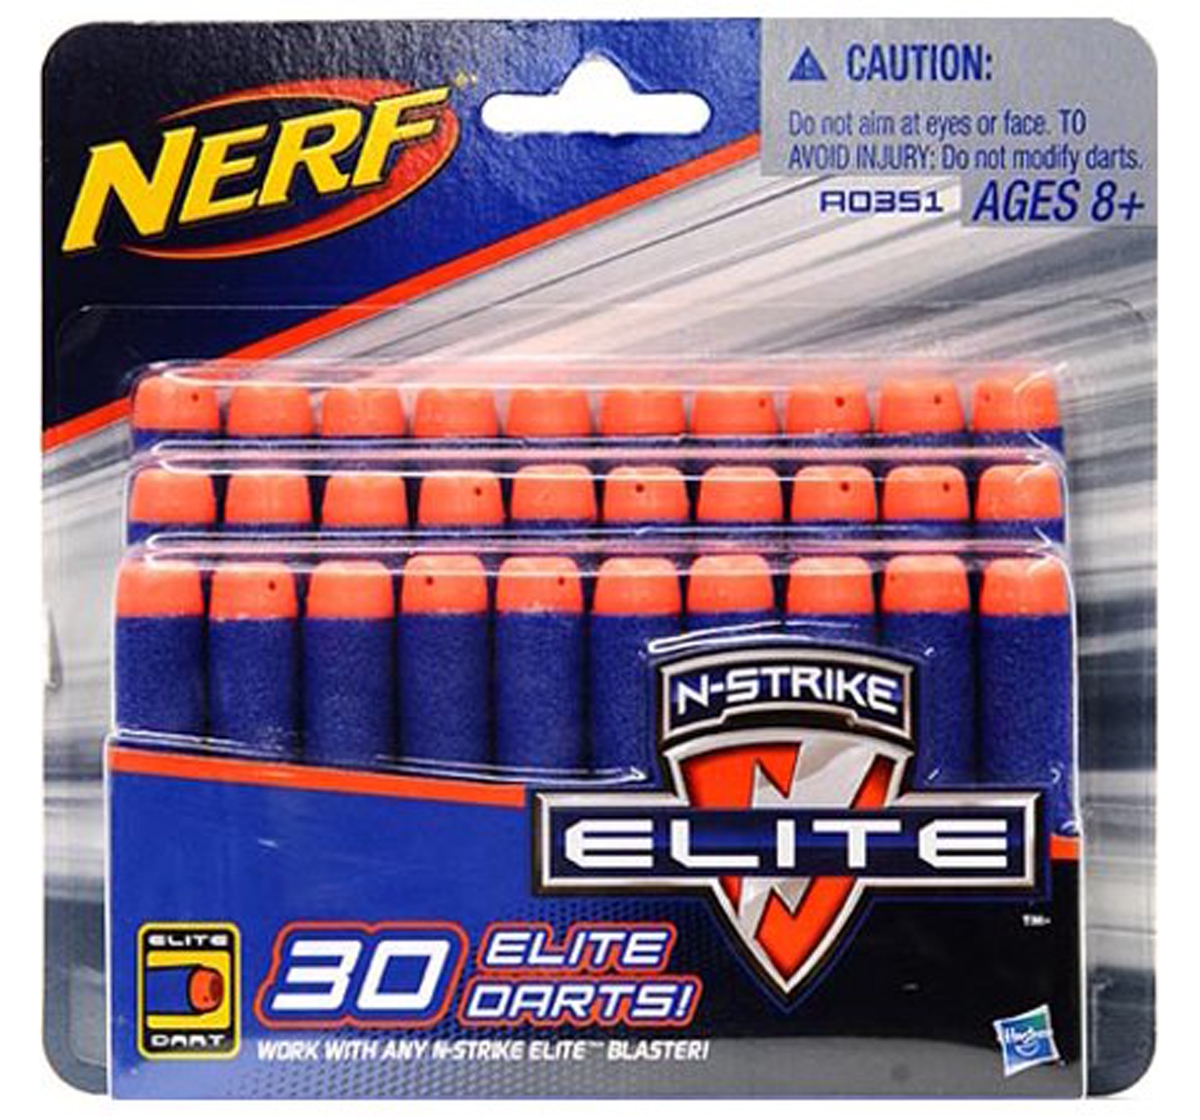 Nerf | Nerf Official 30 Dart Elite Refill Pack for Nerf Strike Elite AccuStrike Zombie Strike Modulus Toy Blasters for Kids, Multicolour 4